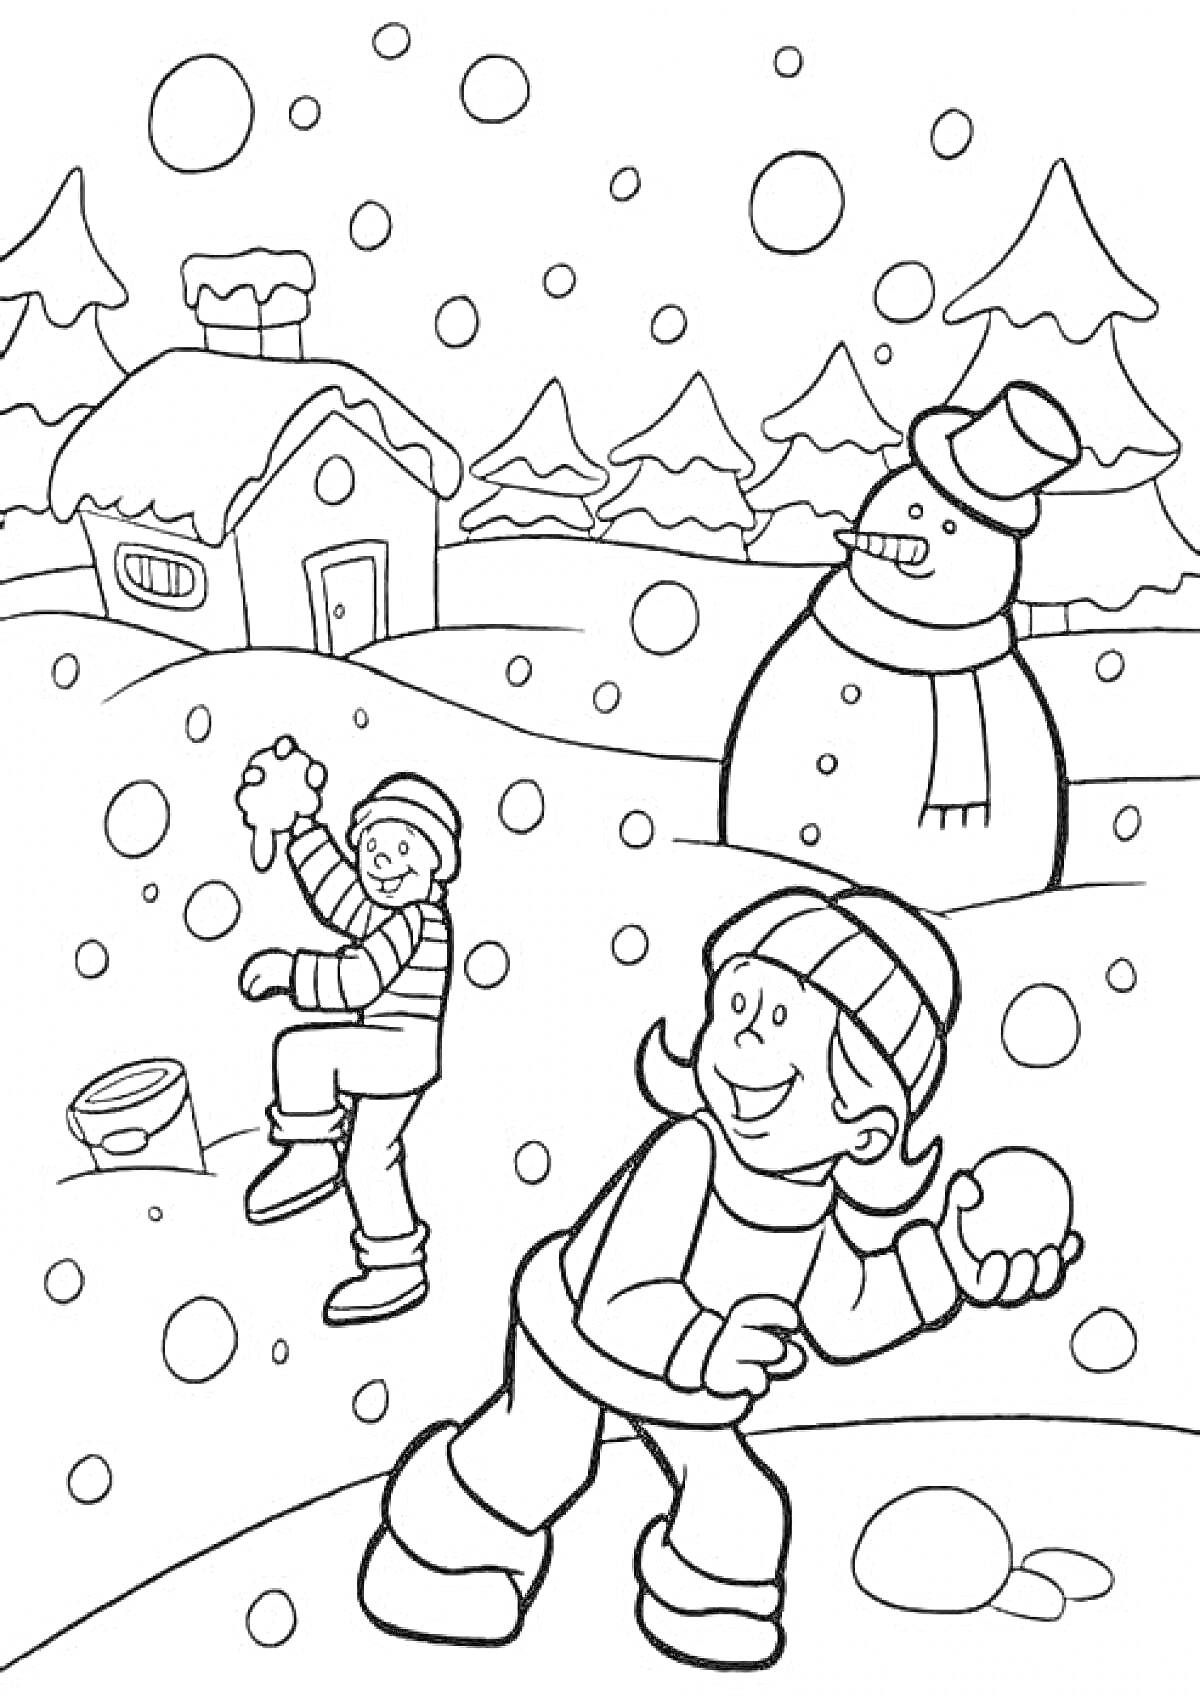 Раскраска Дети играют в снежки на фоне зимнего пейзажа с домиком и снеговиком